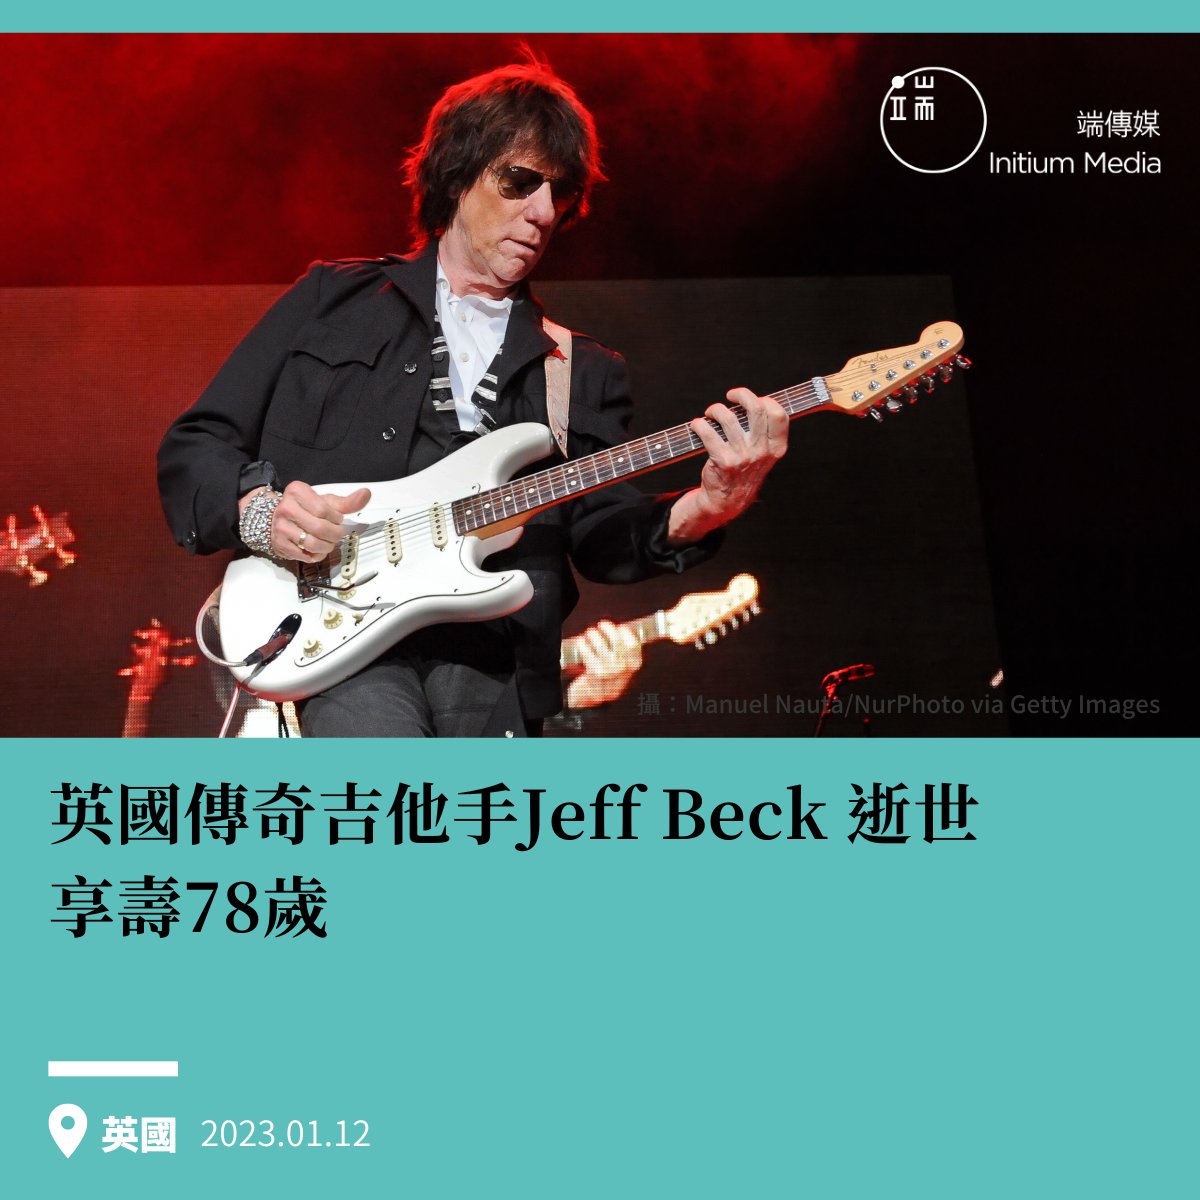 【英國「傳奇吉他手」Jeff Beck 逝世，享壽78歲】 據報導，活躍於1960年代中期的英國「雛鳥樂團」（The Yardbirds）吉他手傑夫貝克（Jeff Beck）因細菌性腦膜炎於10日病逝，享壽78歲。這一消息在其官方Twitter上得到了證實